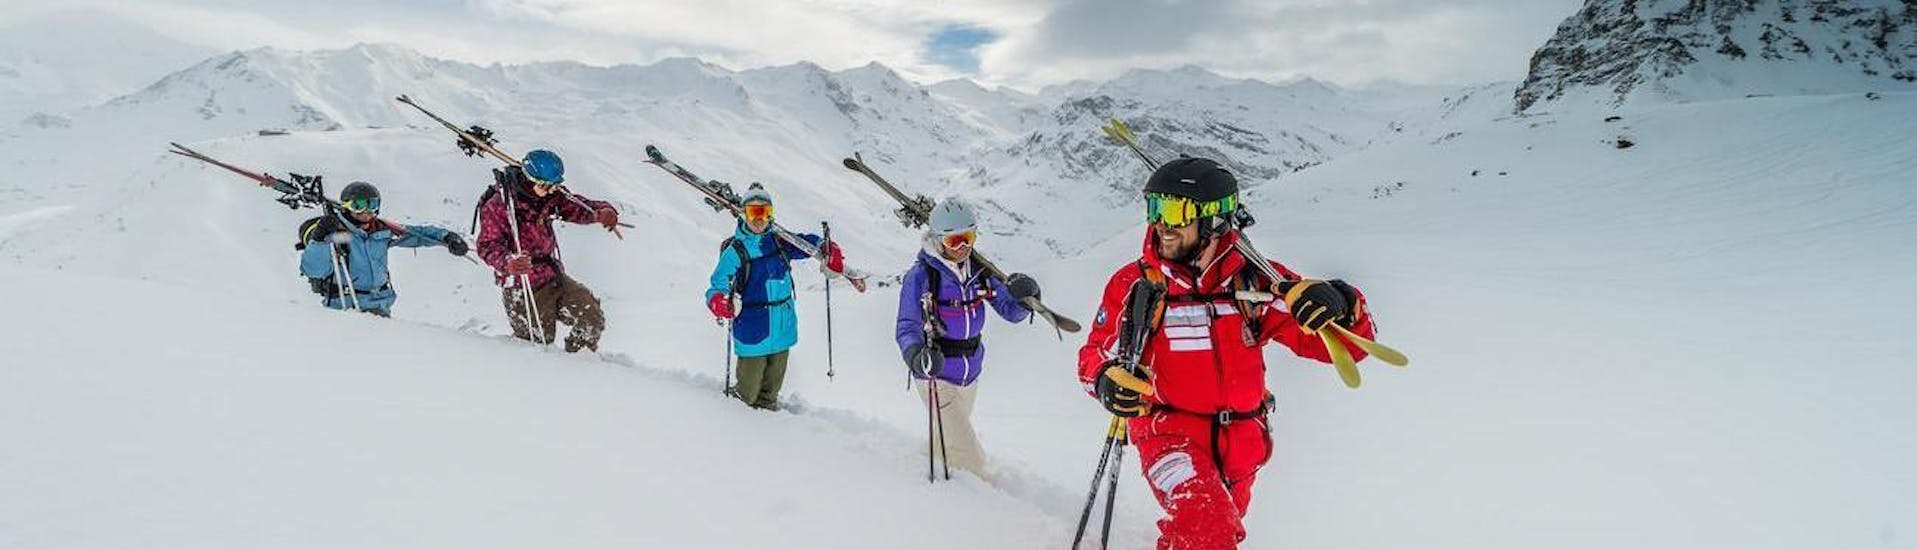 Un gruppo di appassionati di sci condivide la passione per il fuoripista durante le Lezioni private di sci fuoripista - Tutti i livelli, esplorando le nuove aree con un istruttore professionista di ESF Val d'Isère.